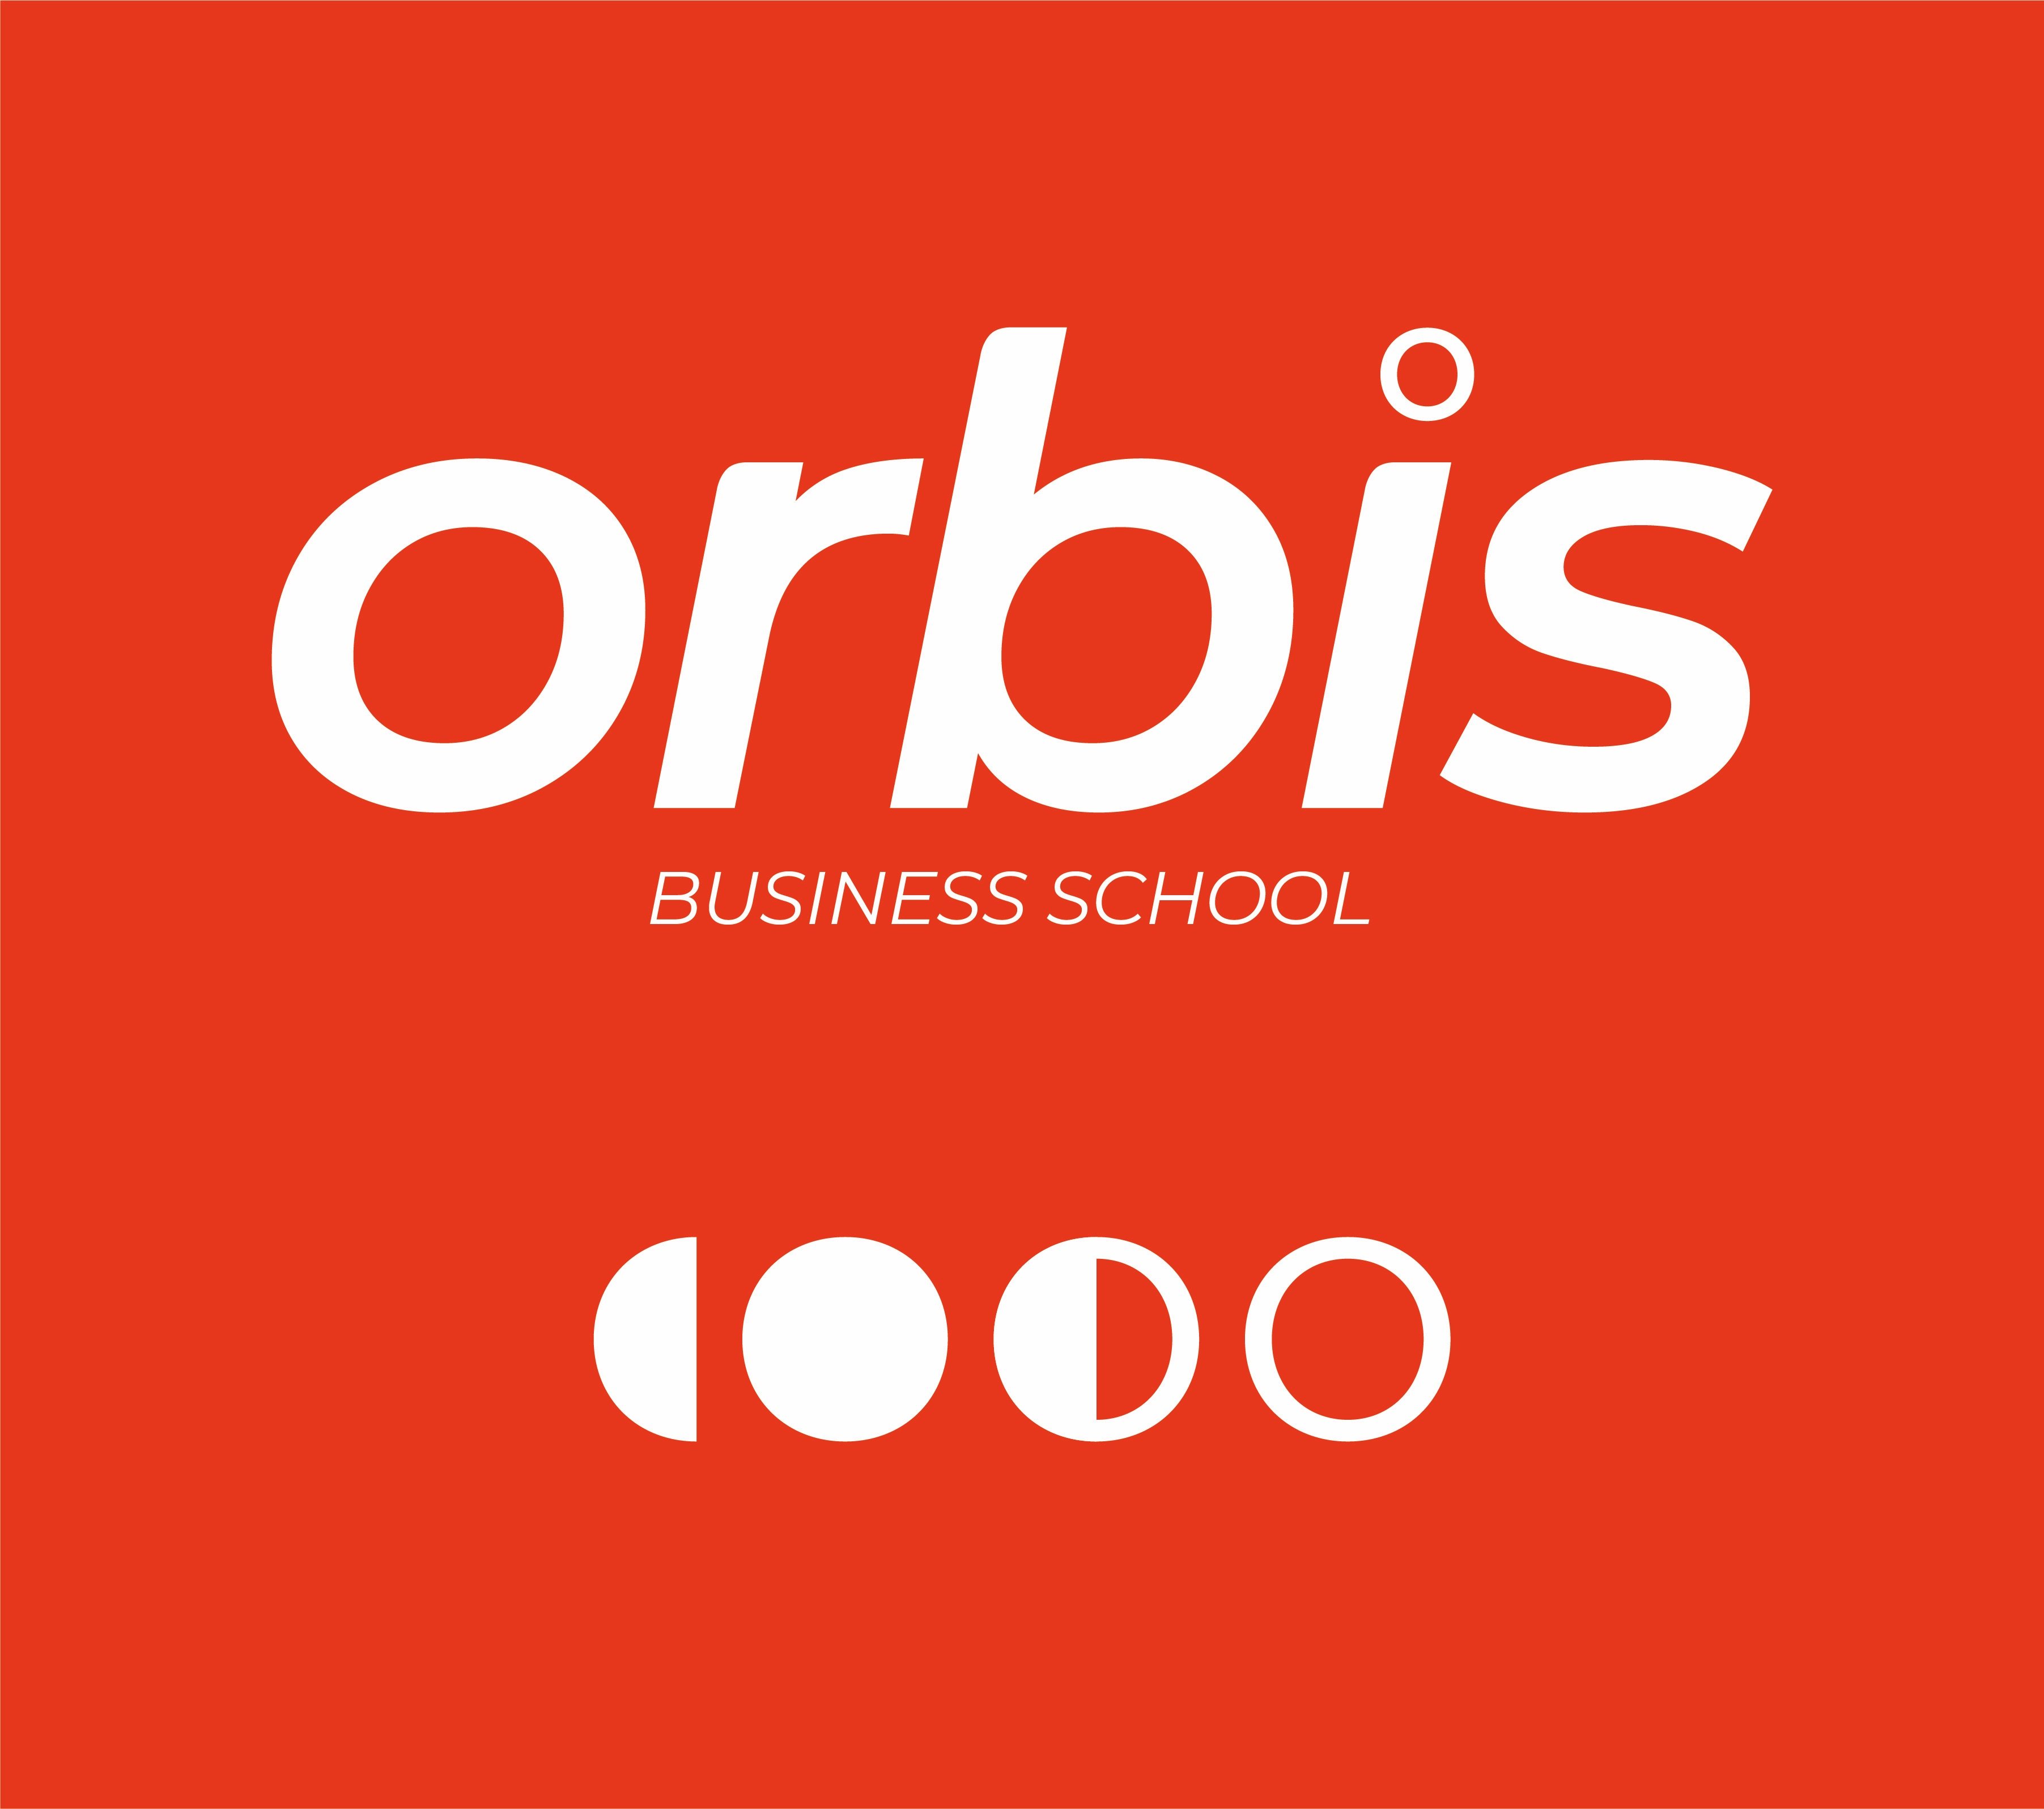 Orbis Business School logo